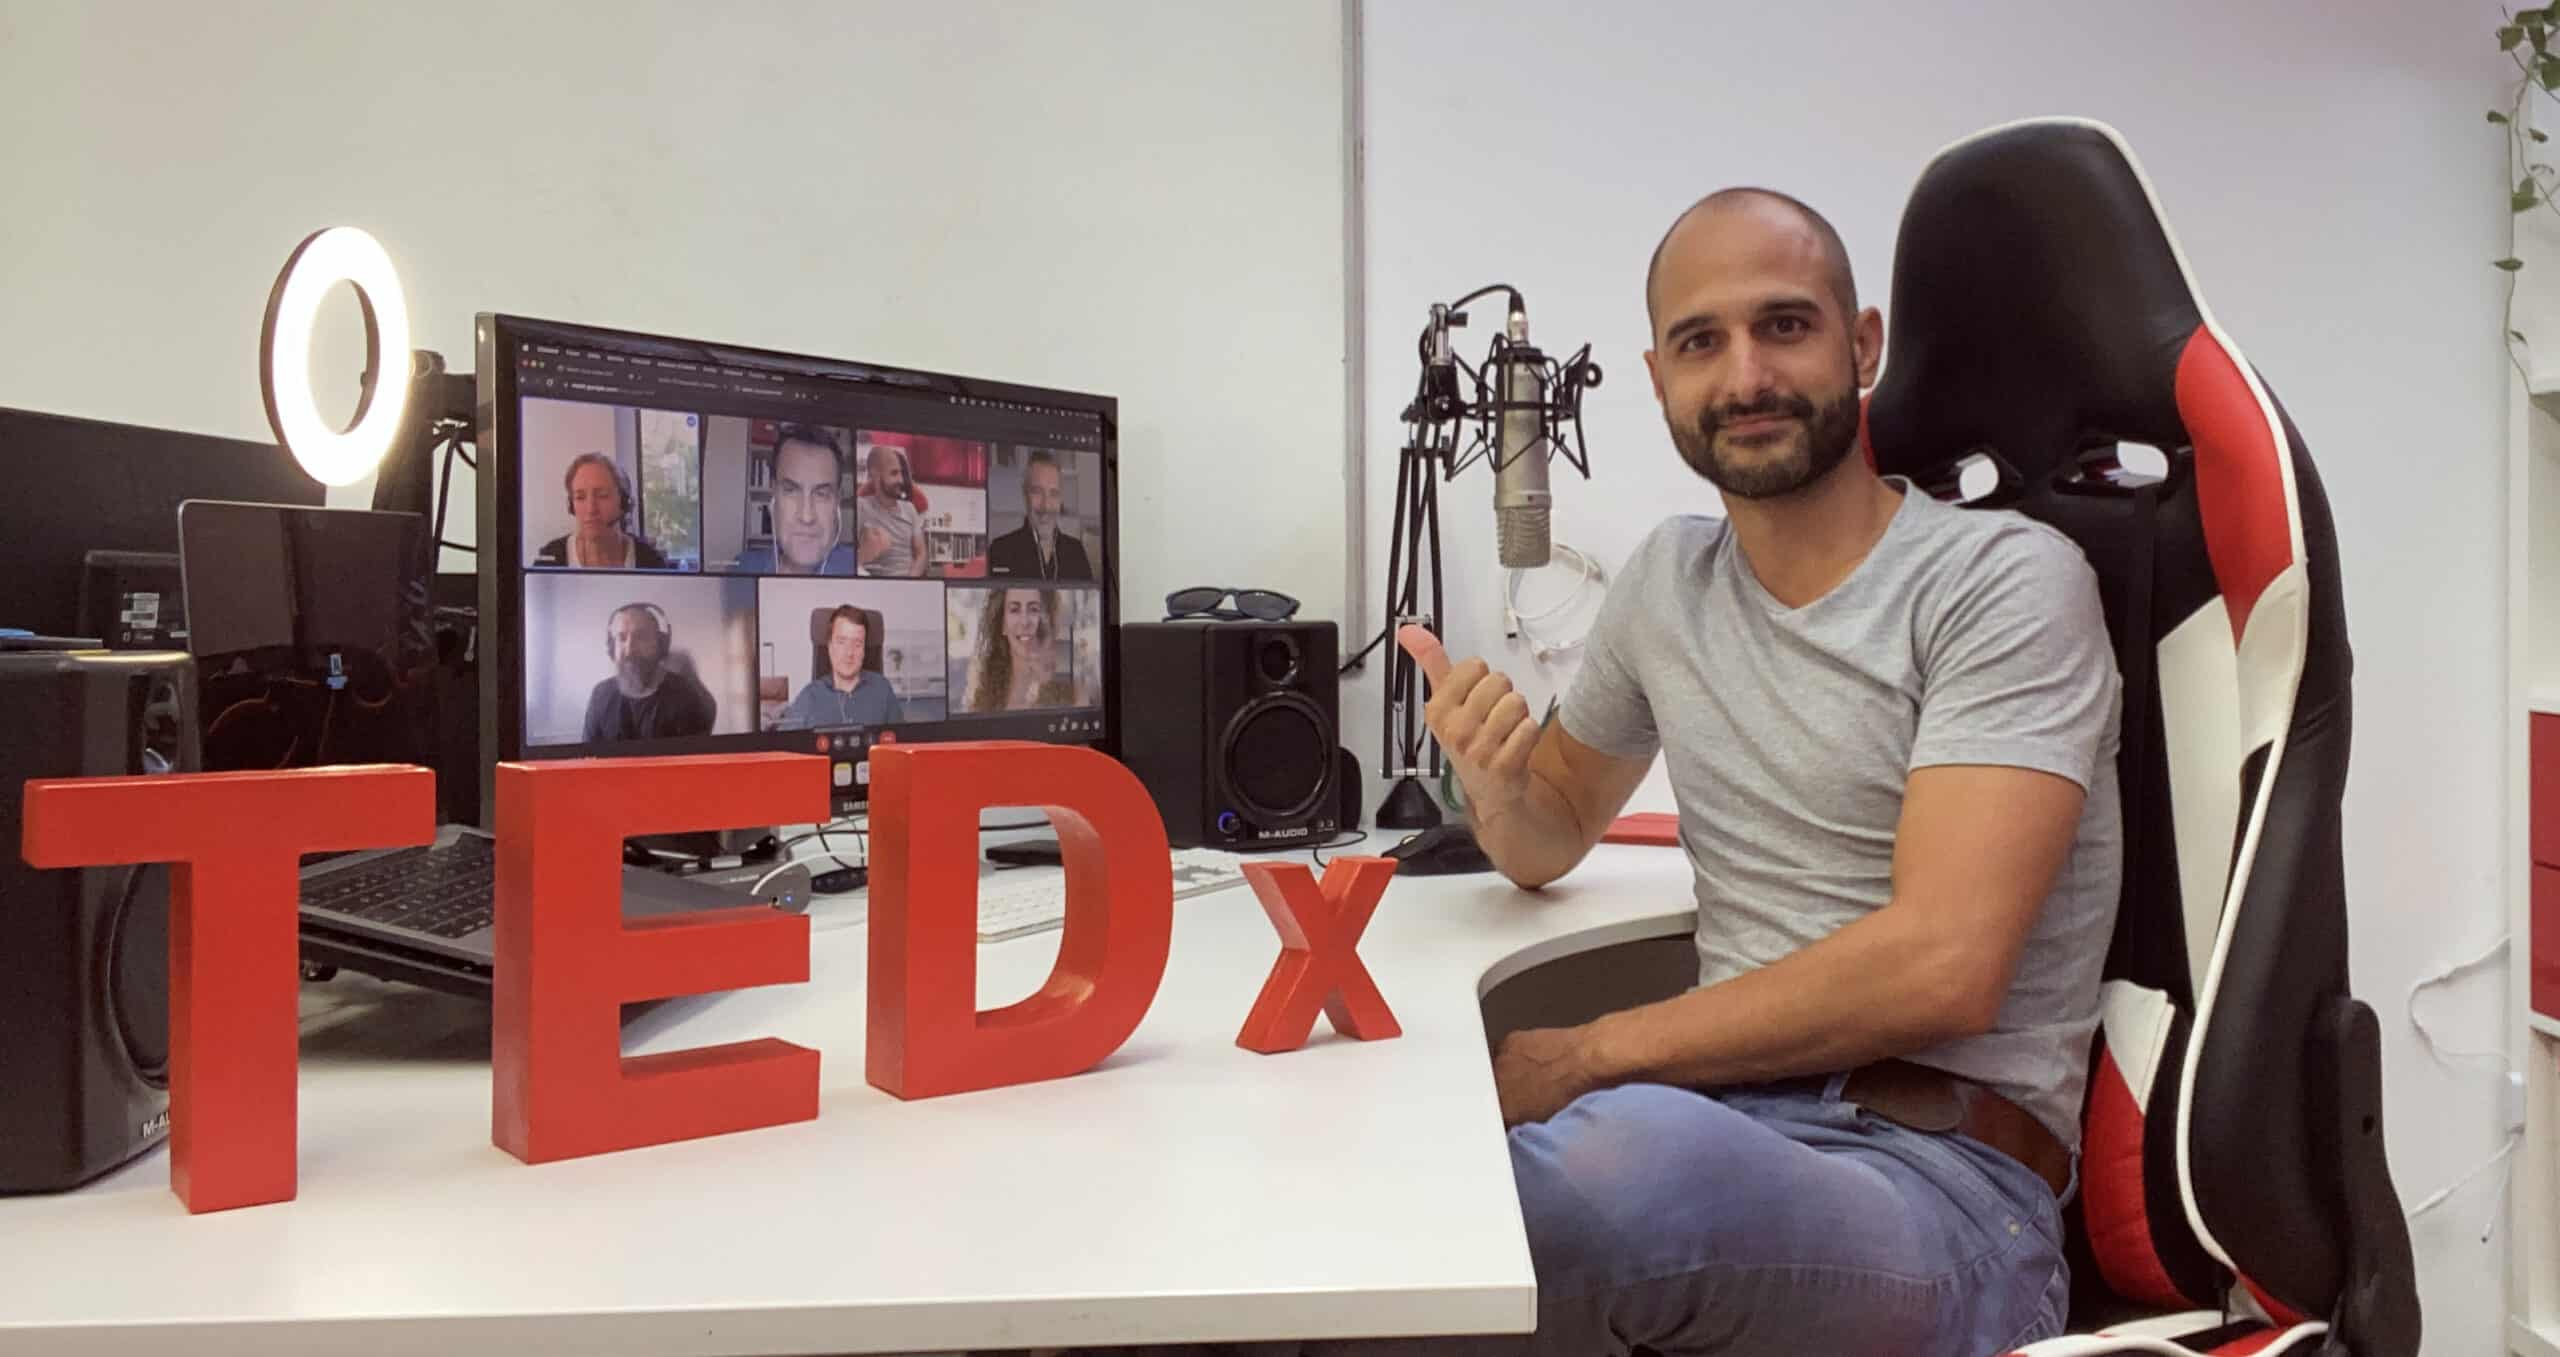 Jordi Solà llicenciatari de TEDxIgualada amb l'equip Organitzador